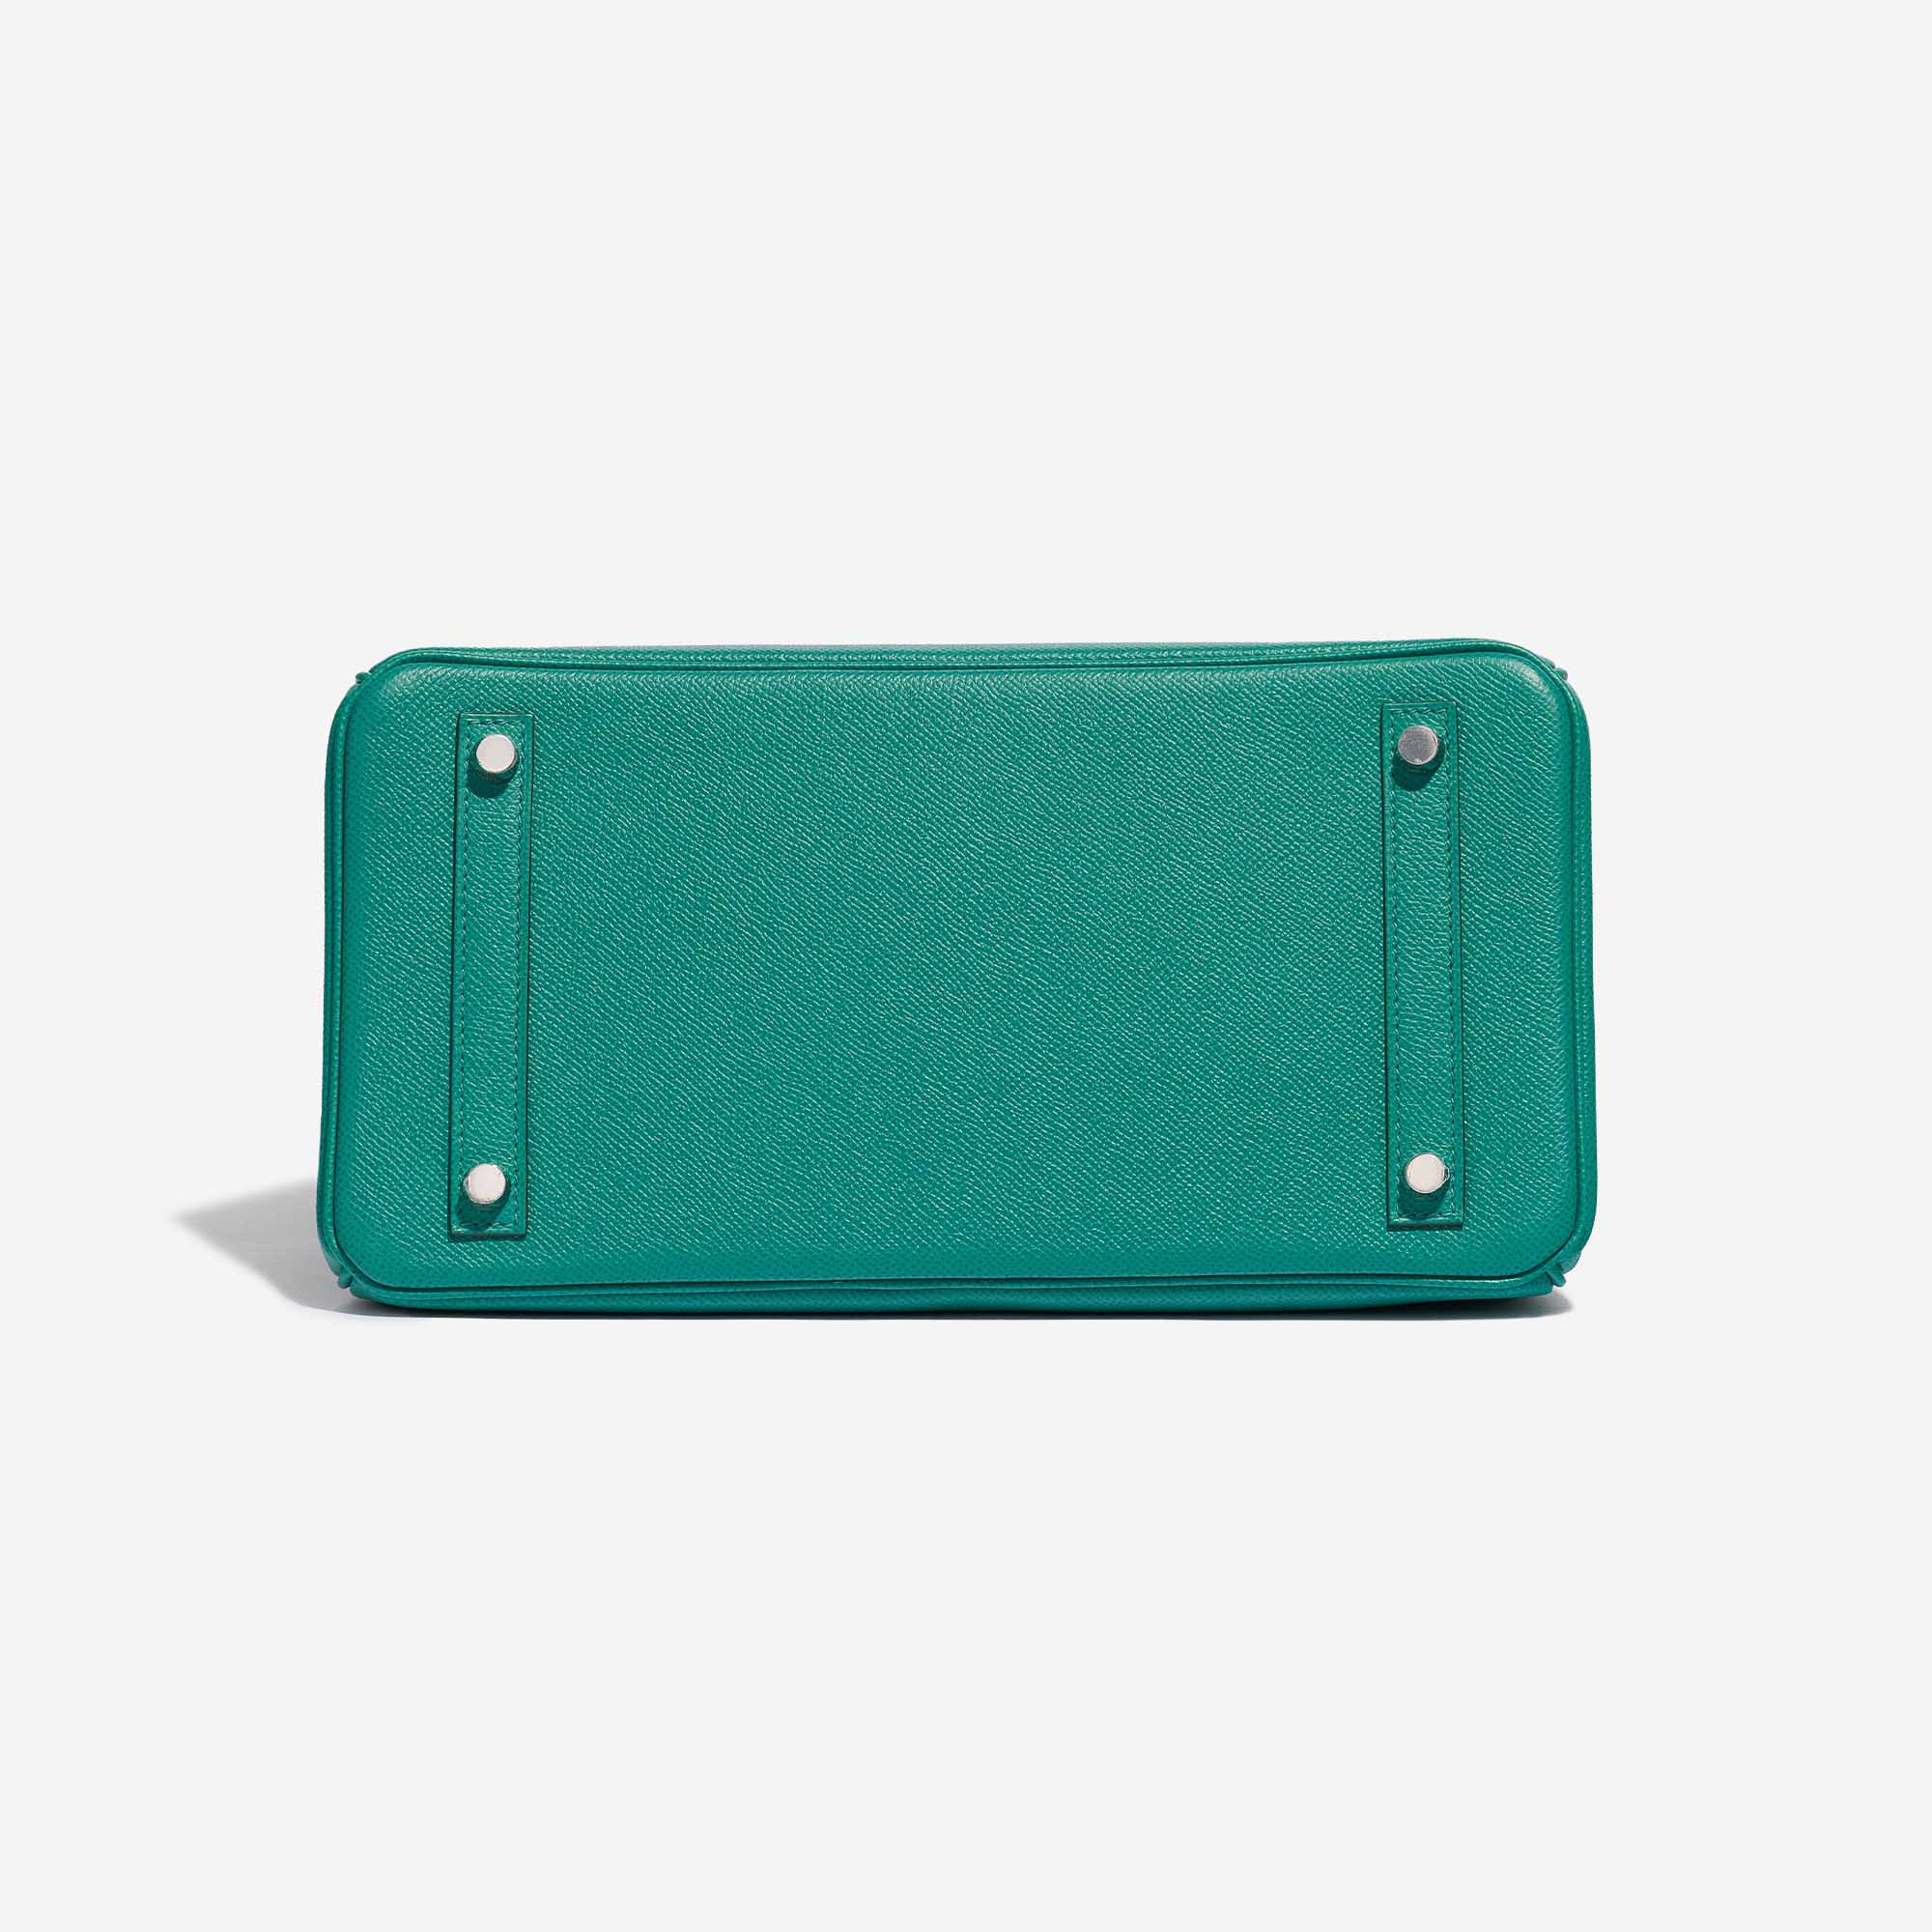 Pre-owned Hermès Tasche Birkin 30 Epsom Vert Jade Green Bottom | Verkaufen Sie Ihre Designer-Tasche auf Saclab.com